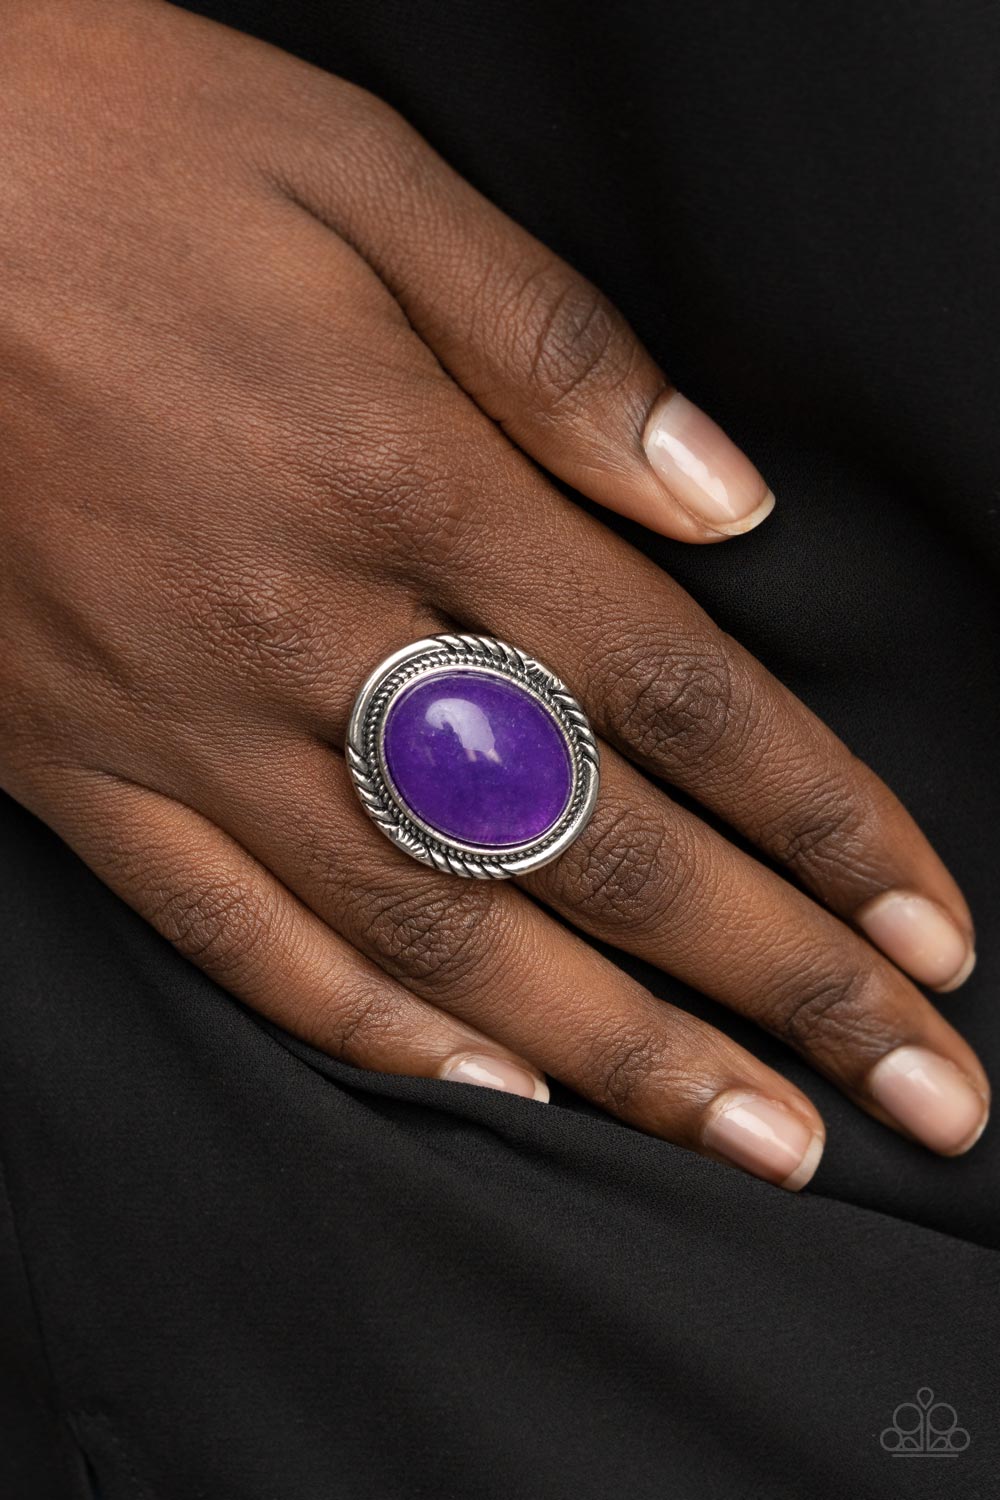 Stone Terrarium - Purple Ring